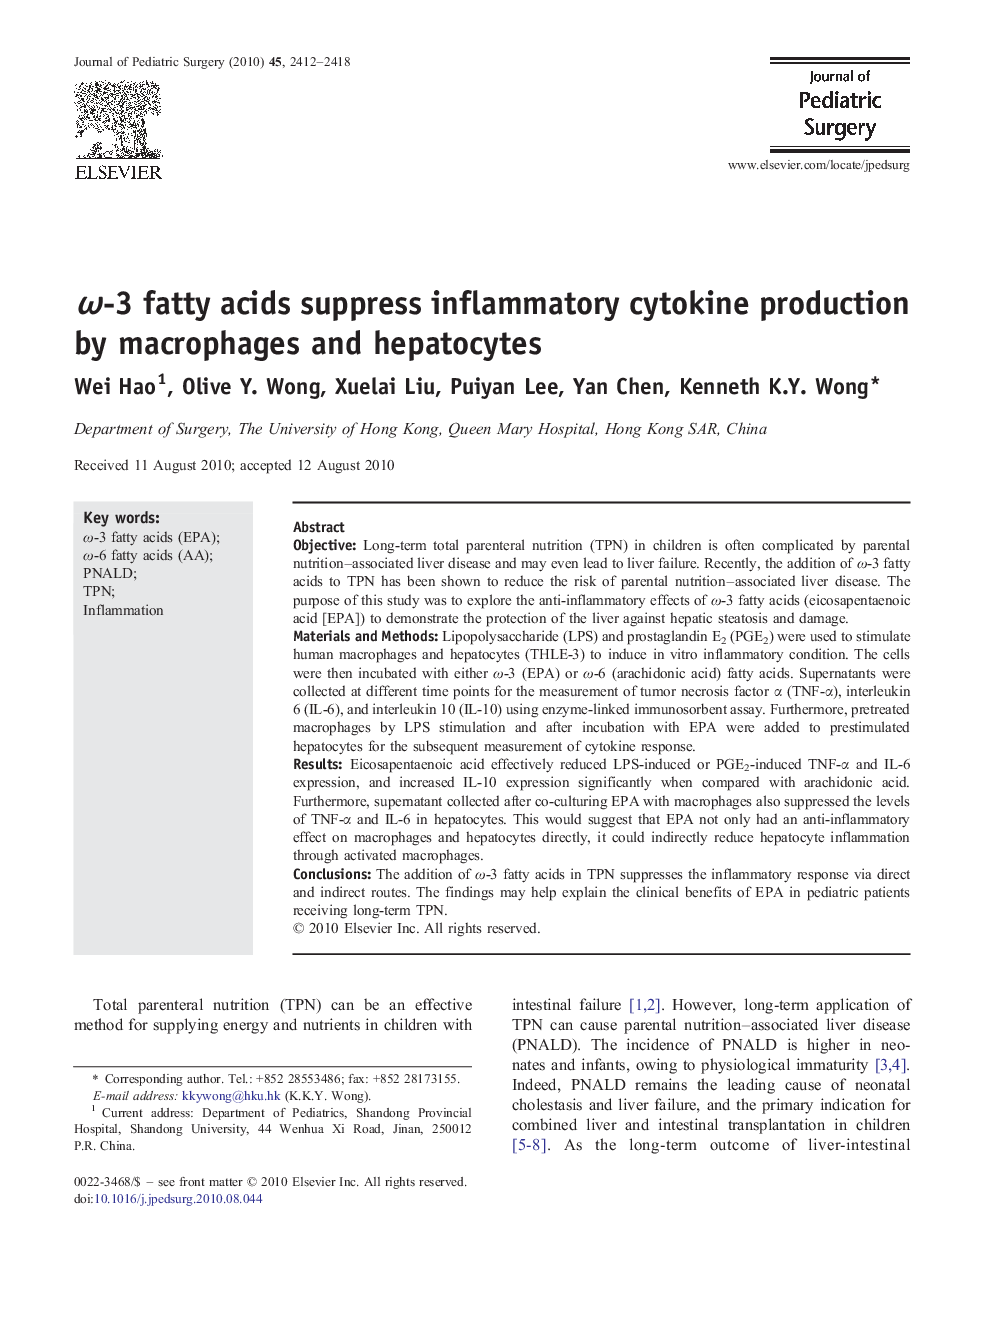 ω-3 fatty acids suppress inflammatory cytokine production by macrophages and hepatocytes